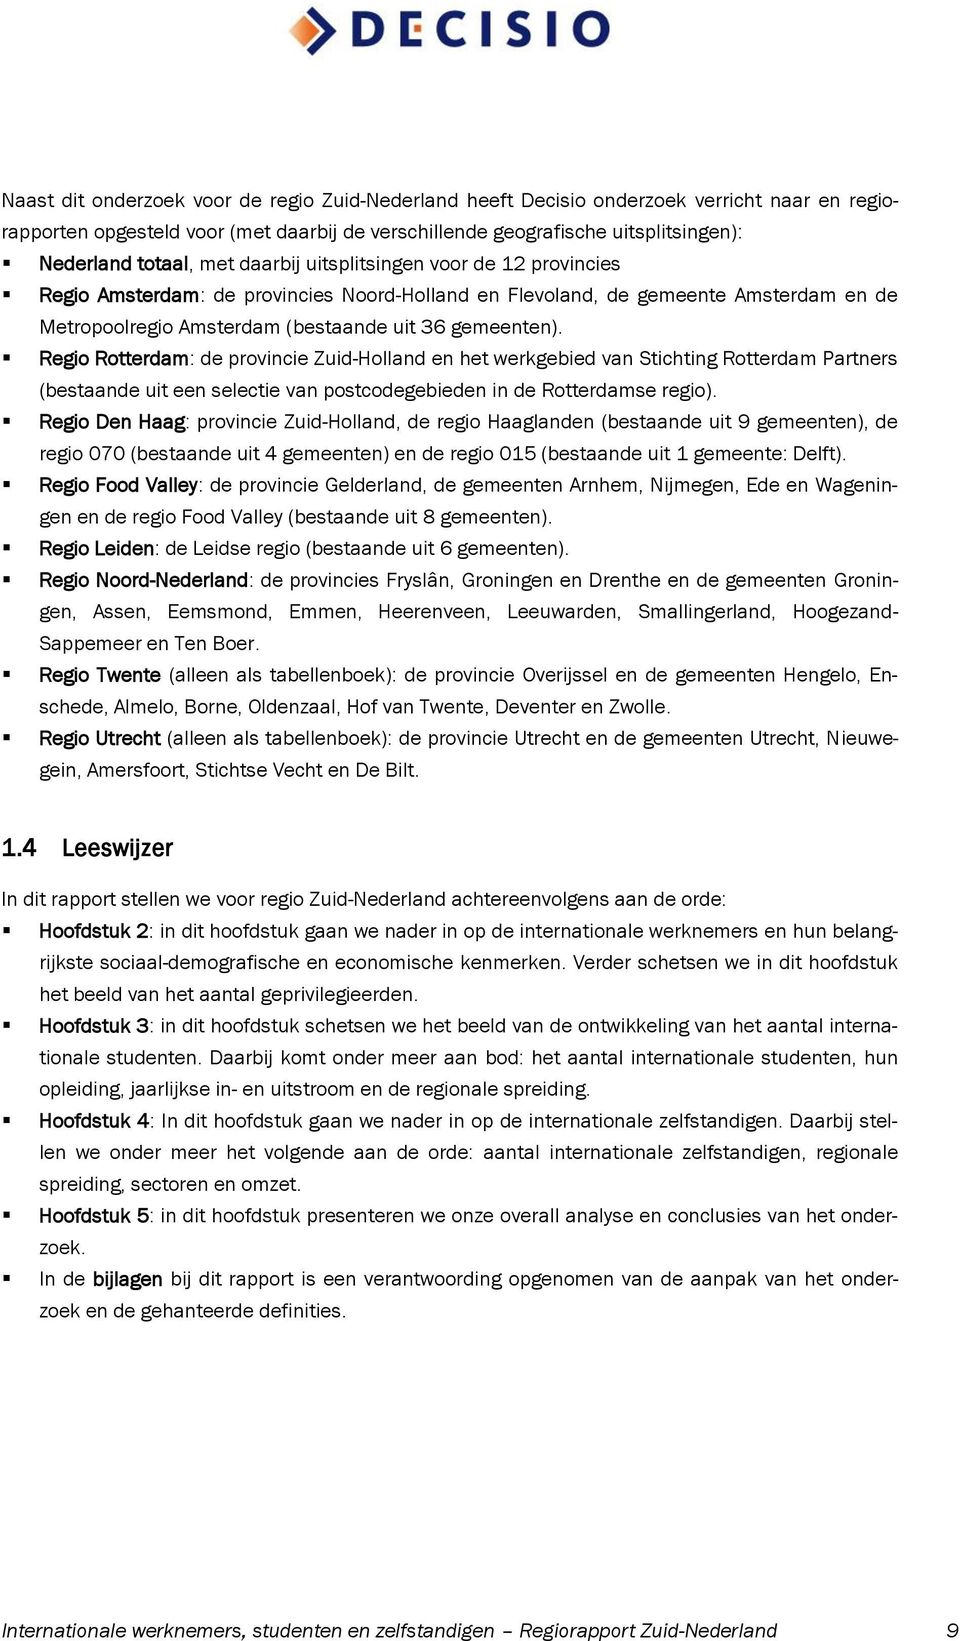 Regio Rotterdam: de provincie Zuid-Holland en het werkgebied van Stichting Rotterdam Partners (bestaande uit een selectie van postcodegebieden in de Rotterdamse regio).